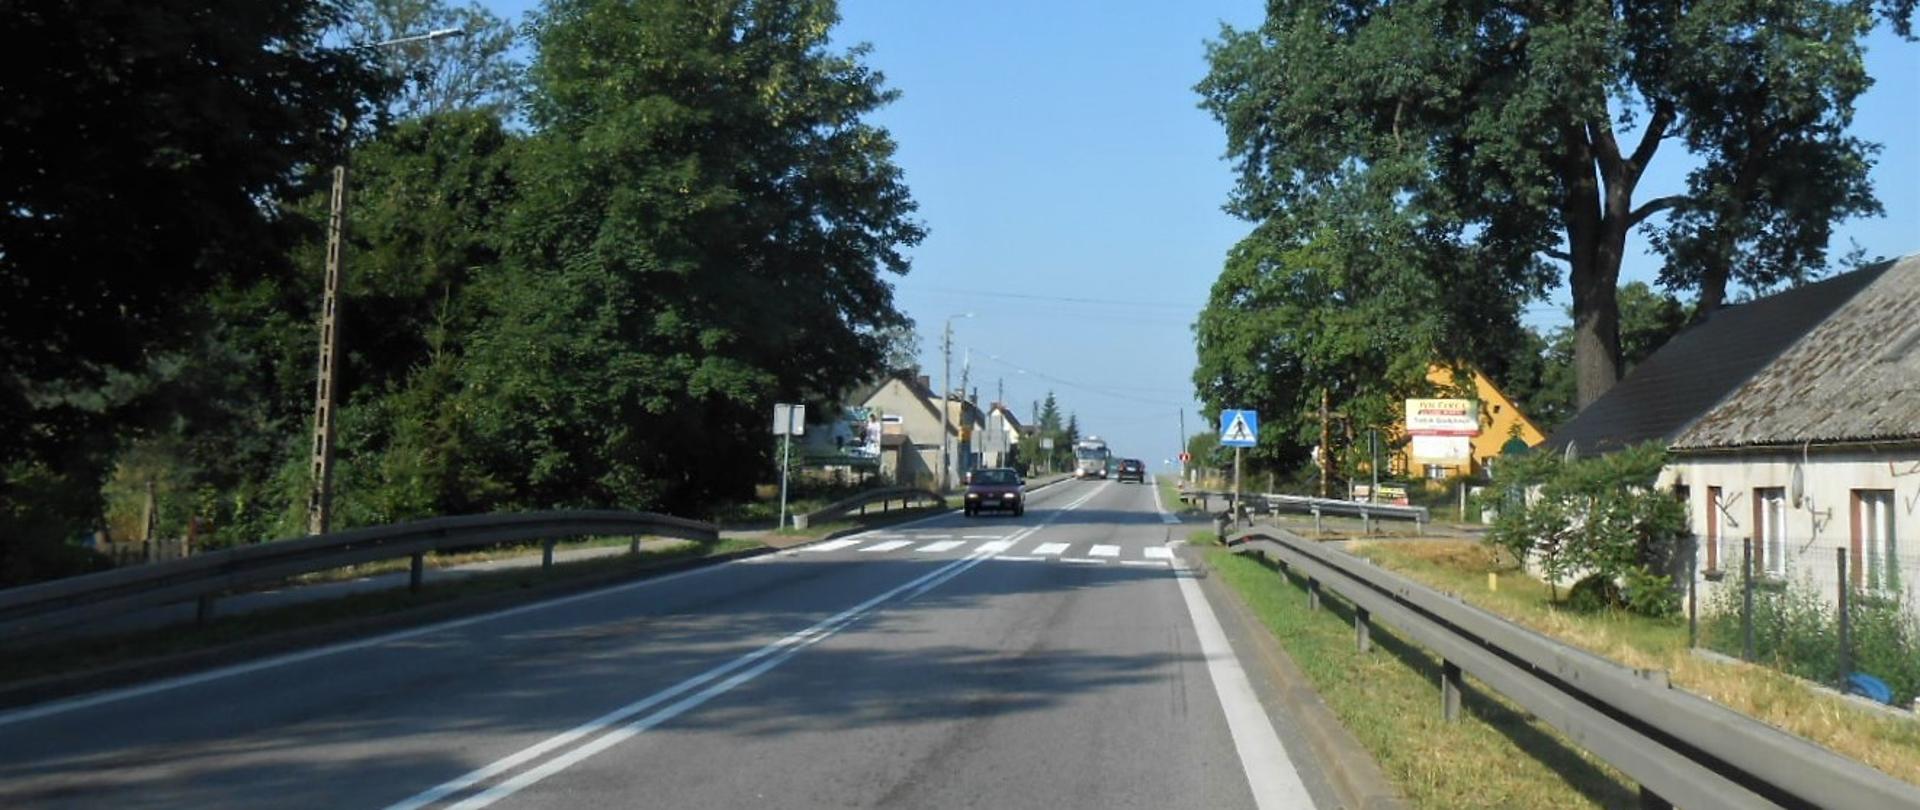 Zdjęcie przedstawia drogę krajową nr 6 w Godętowie w terenie zabudowanym. Na pierwszym planie jest jezdnia z przejściem dla pieszych, a w oddali widać samochody.